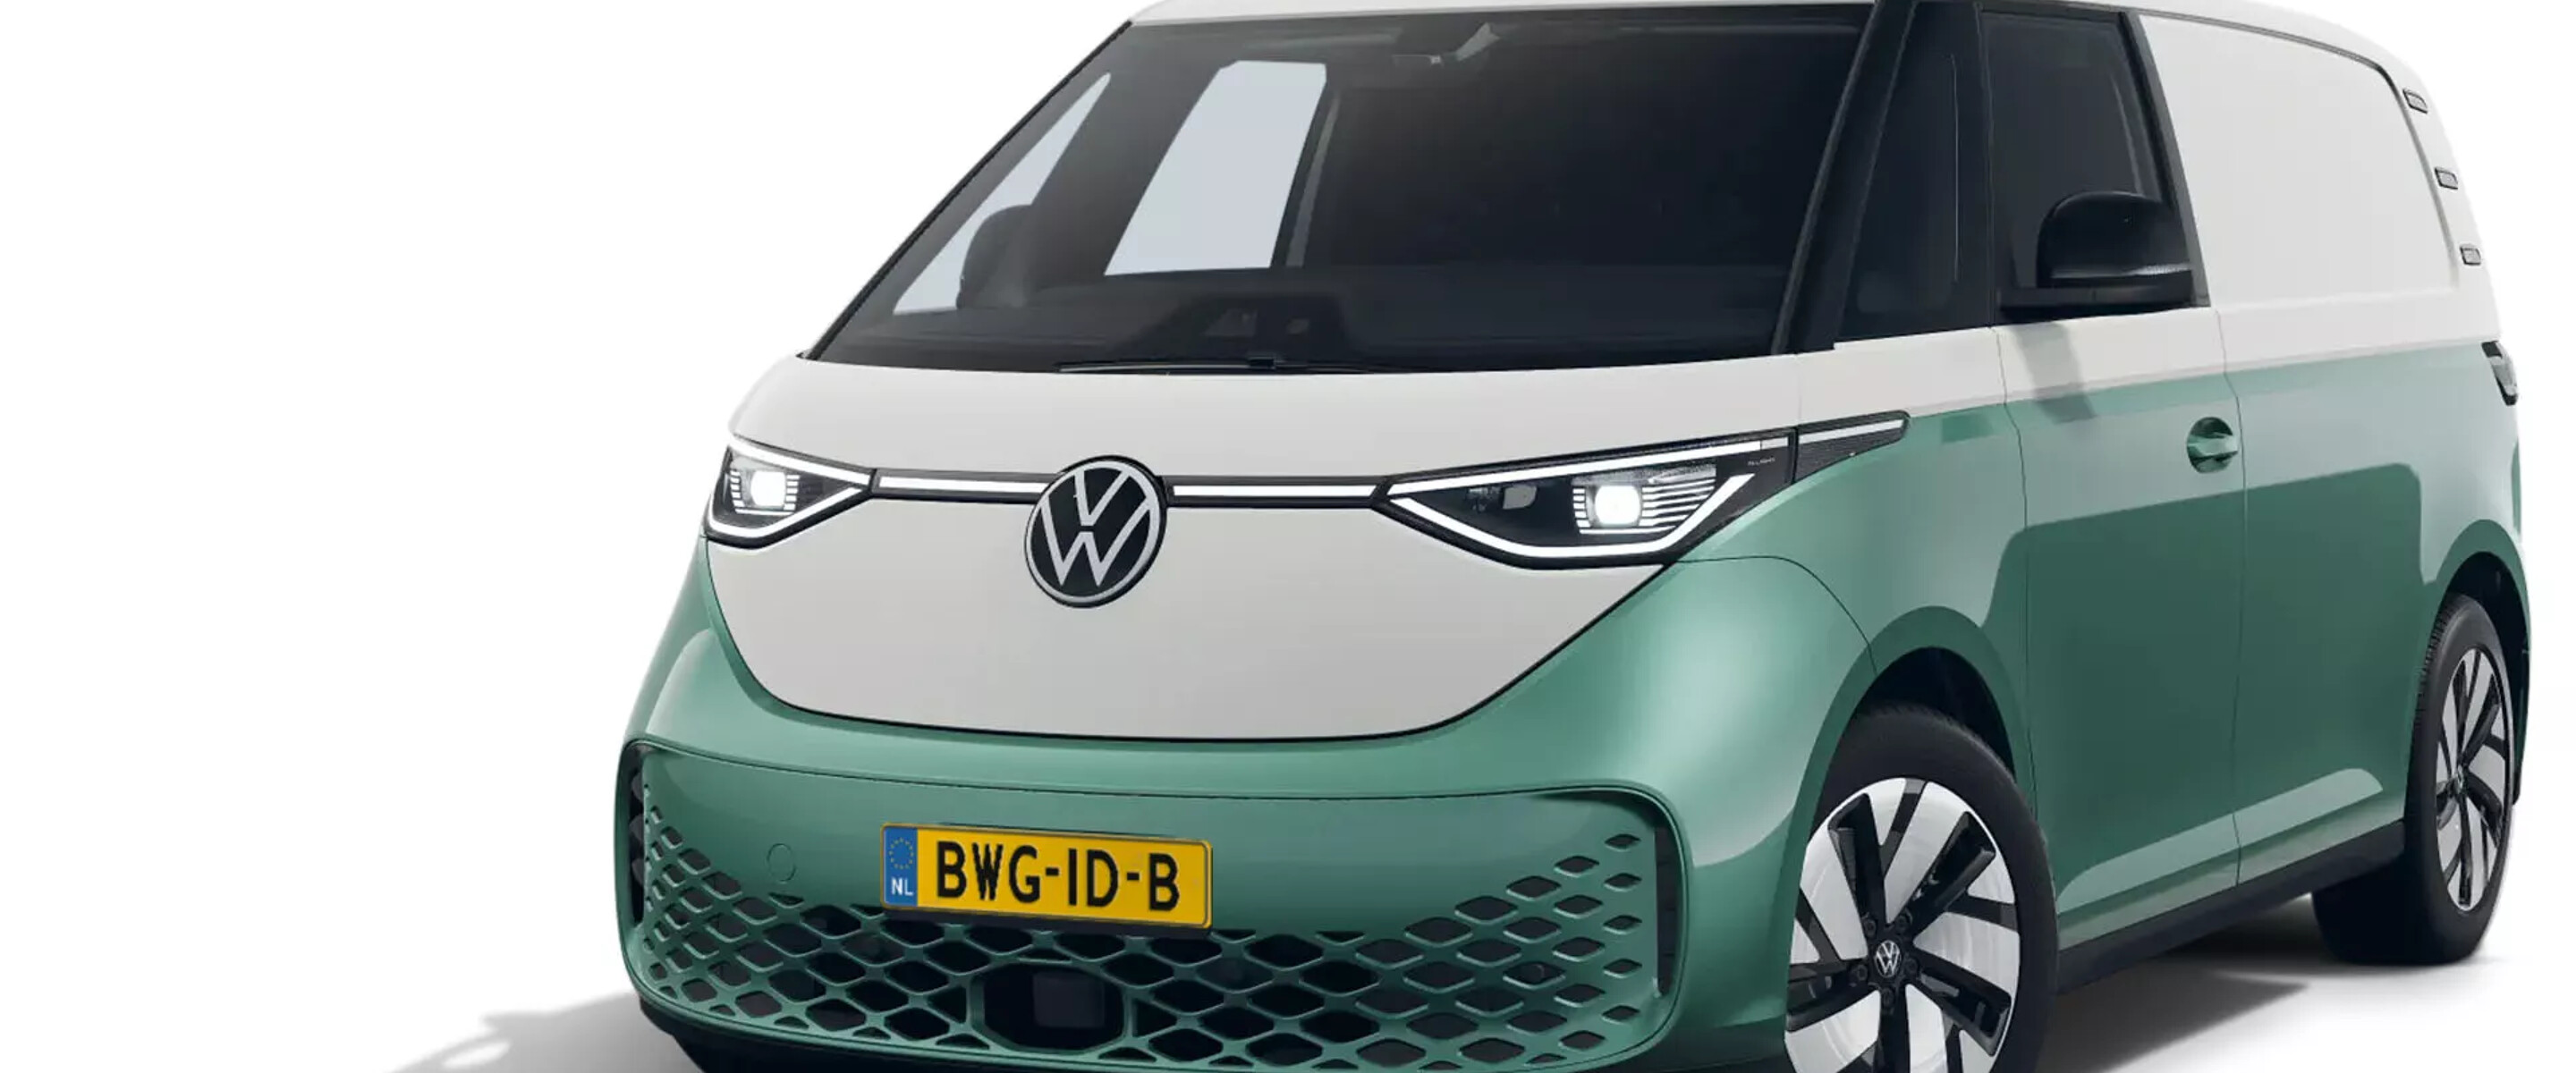 Volkswagen Bedrijfswagens ID Buzz Cargo Bulli Edition (4)